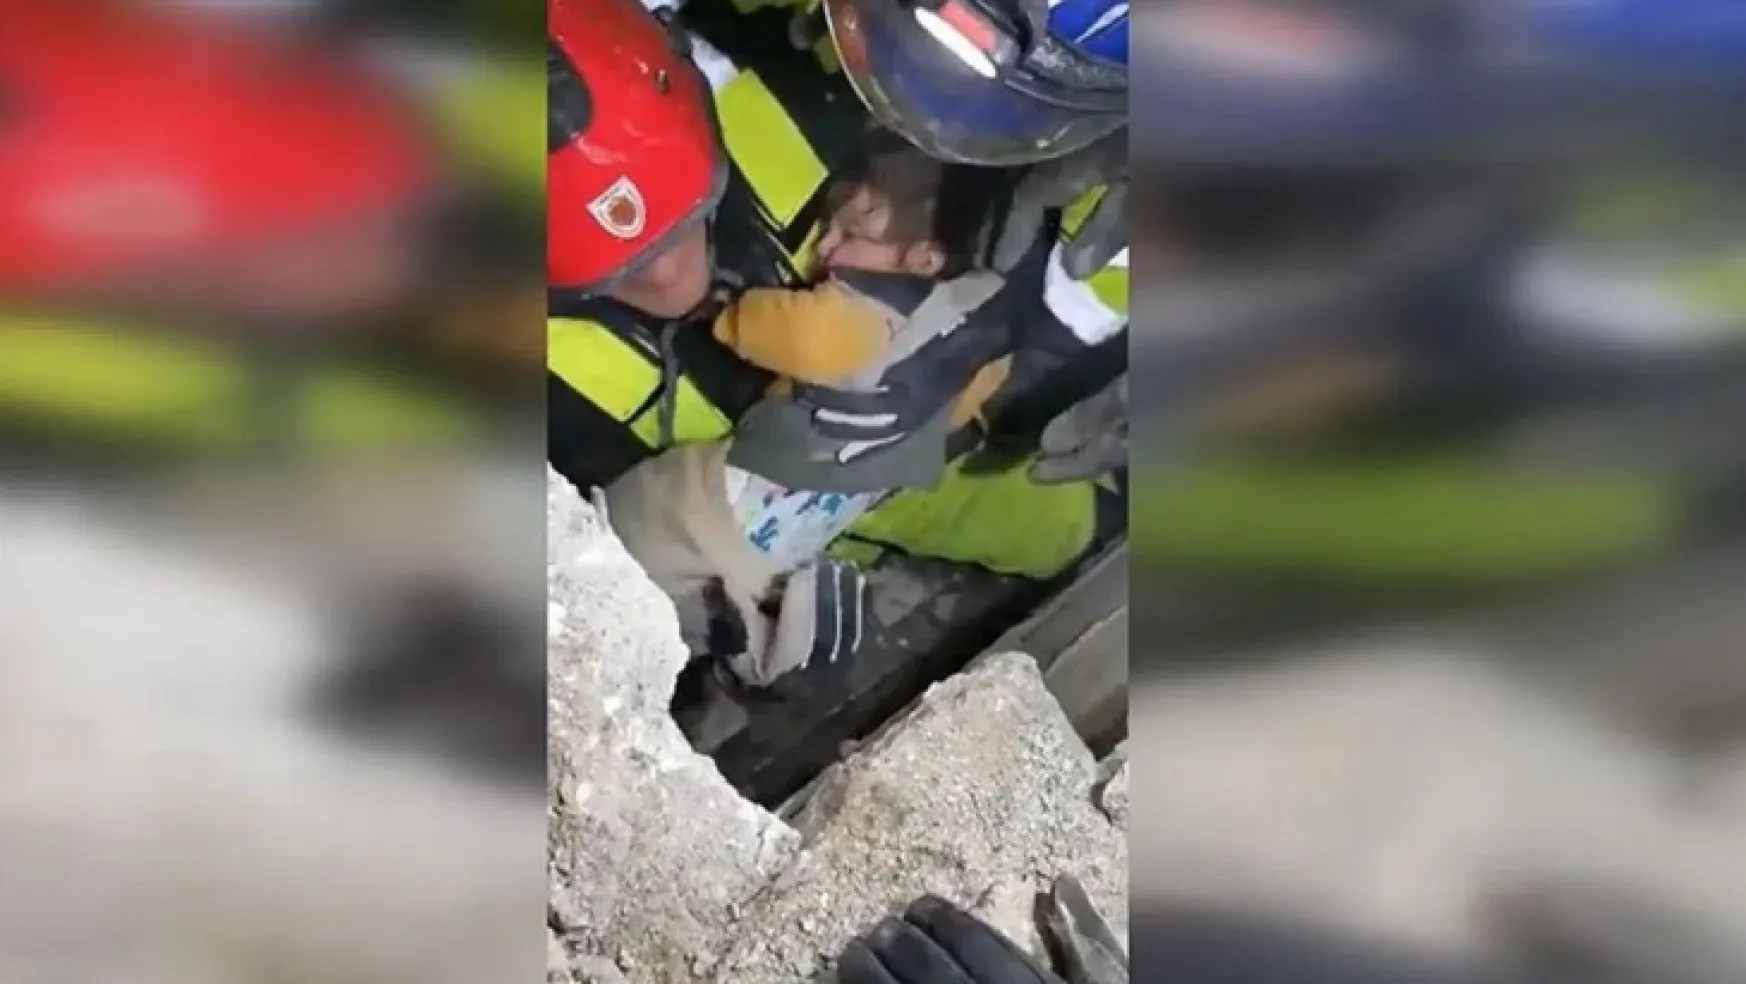 Macar kurtarma ekibi 1.5 yaşındaki bebeği kurtardı